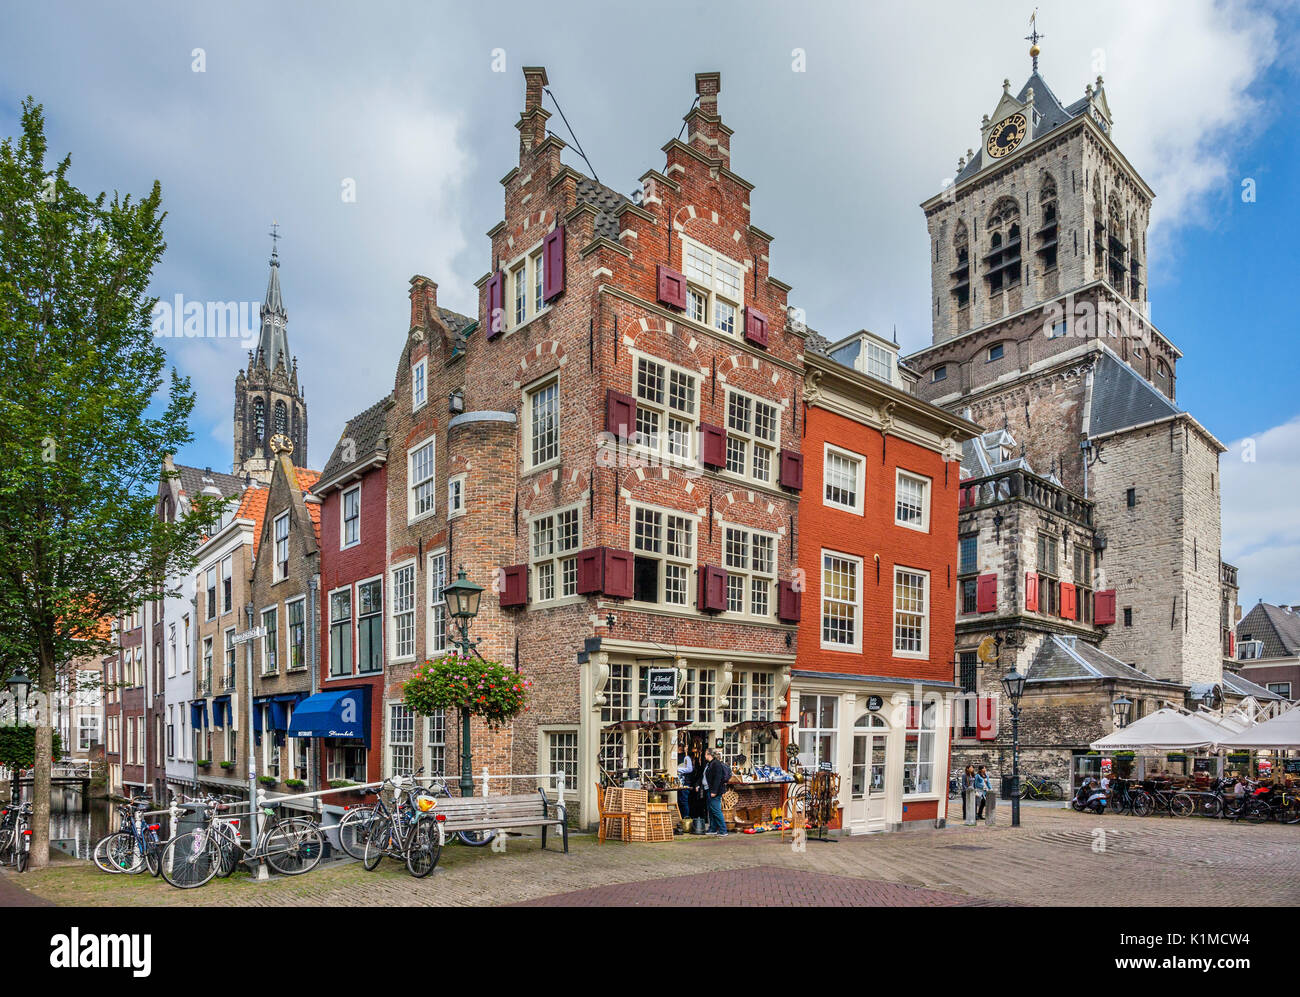 Pays Bas, Hollande-du-Sud, centre de la vieille ville de Delft, de très beaux spécimens de l'architecture néerlandaise au coin Voldersgracht et place du marché avec vue sur l'EC Banque D'Images